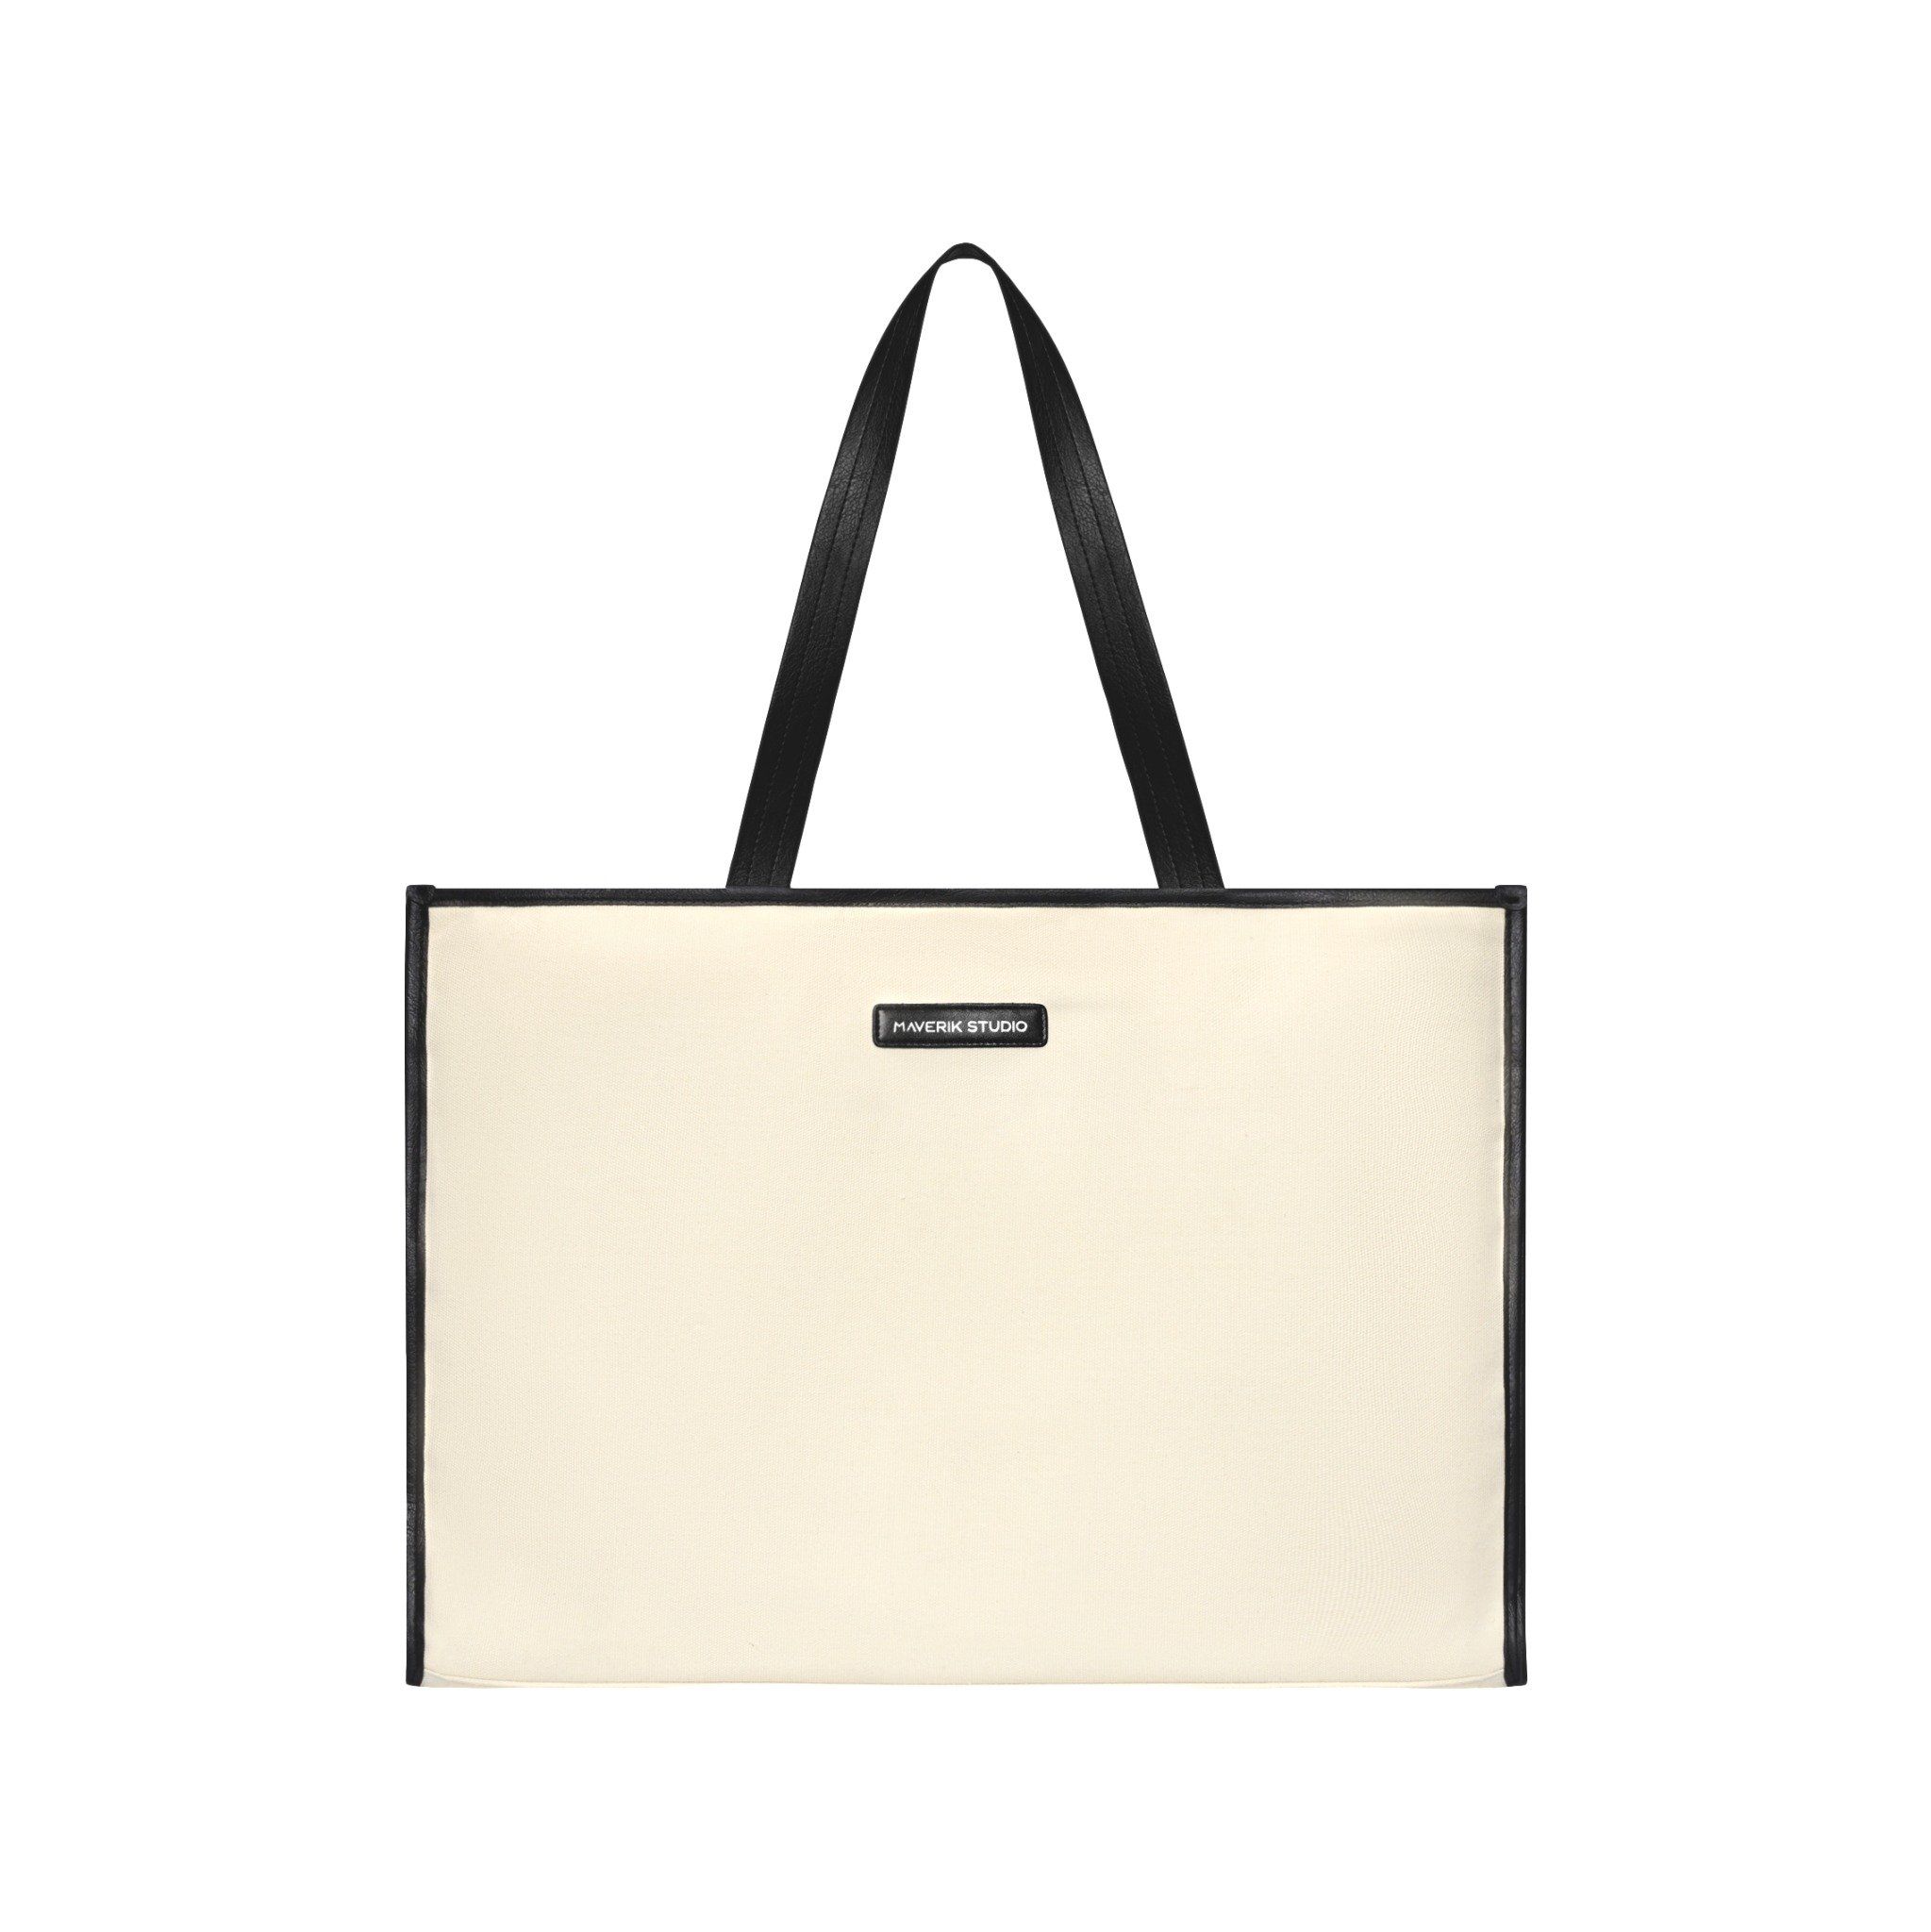  Canvas/Leather Tote Bag ( Cream White ) 